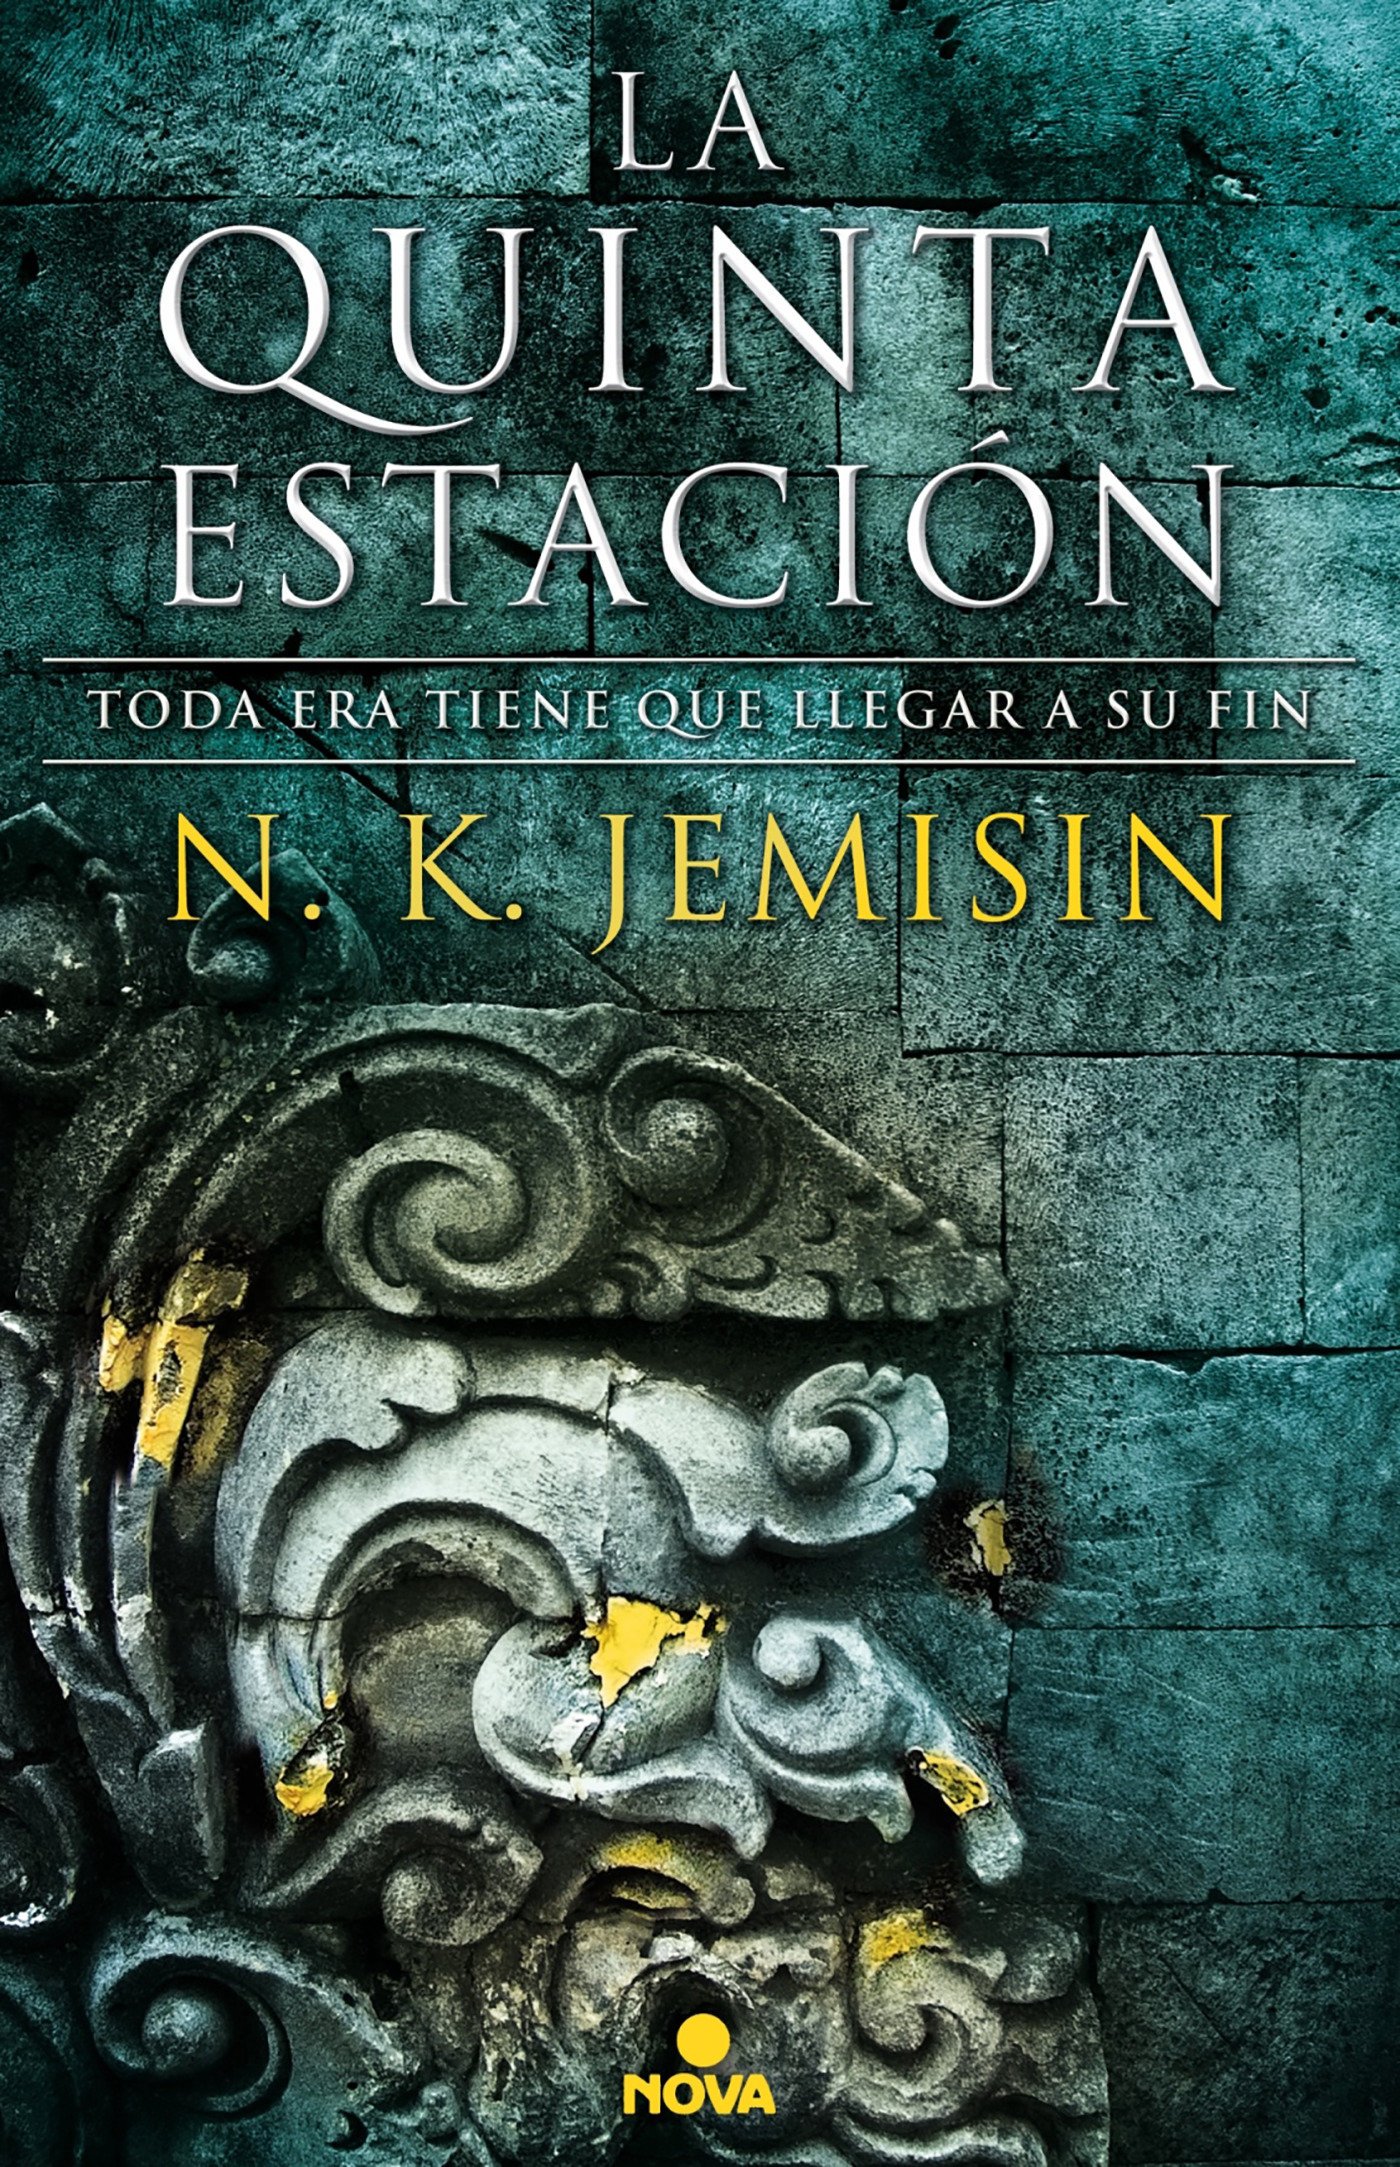 La quinta estación (español language, 2017, Ediciones B)